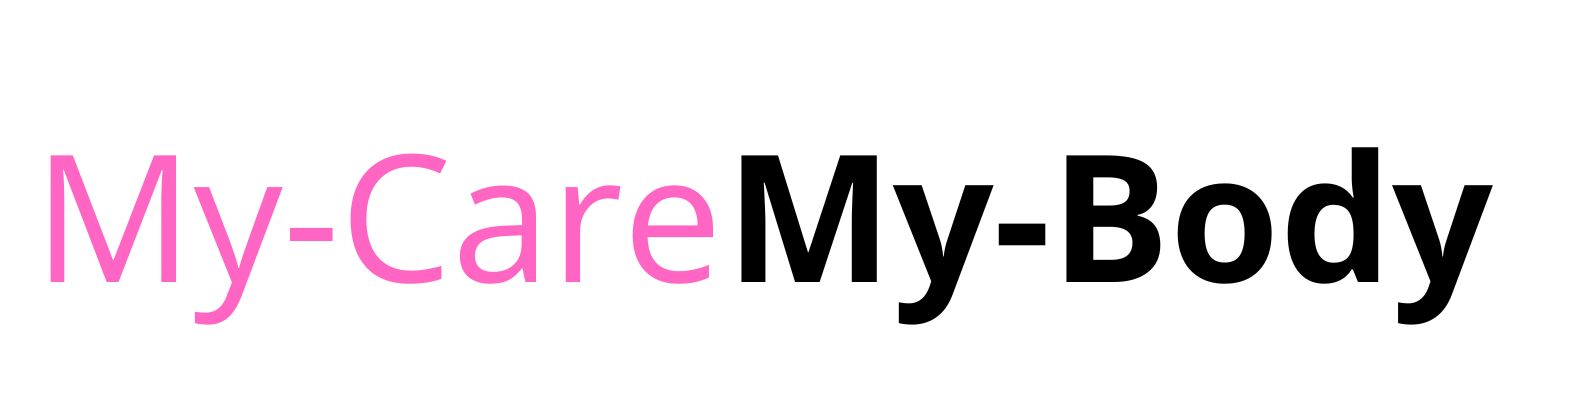 MyCare MyBody™